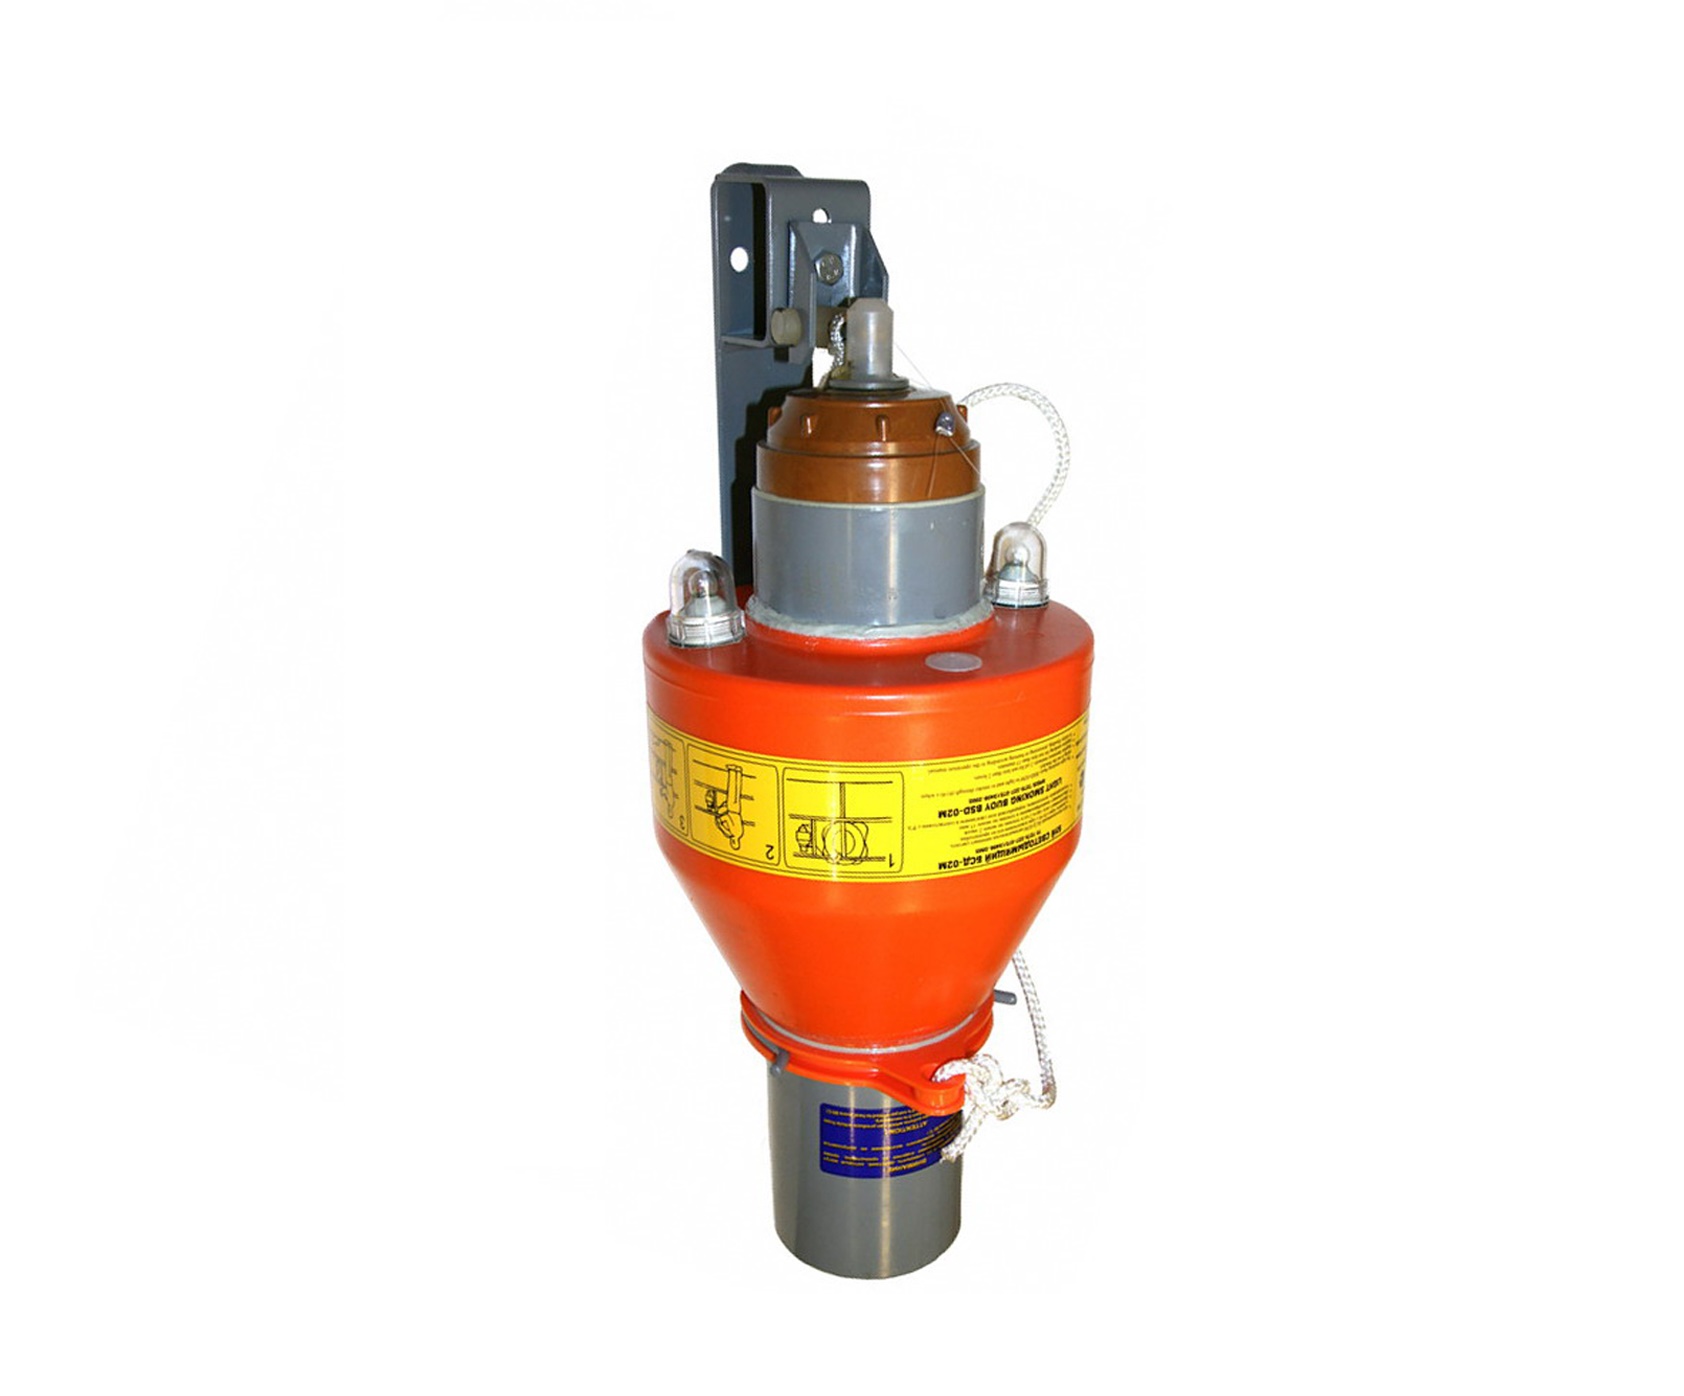 Light-and-smoke buoys БСД-02М, БСД-02Мсд